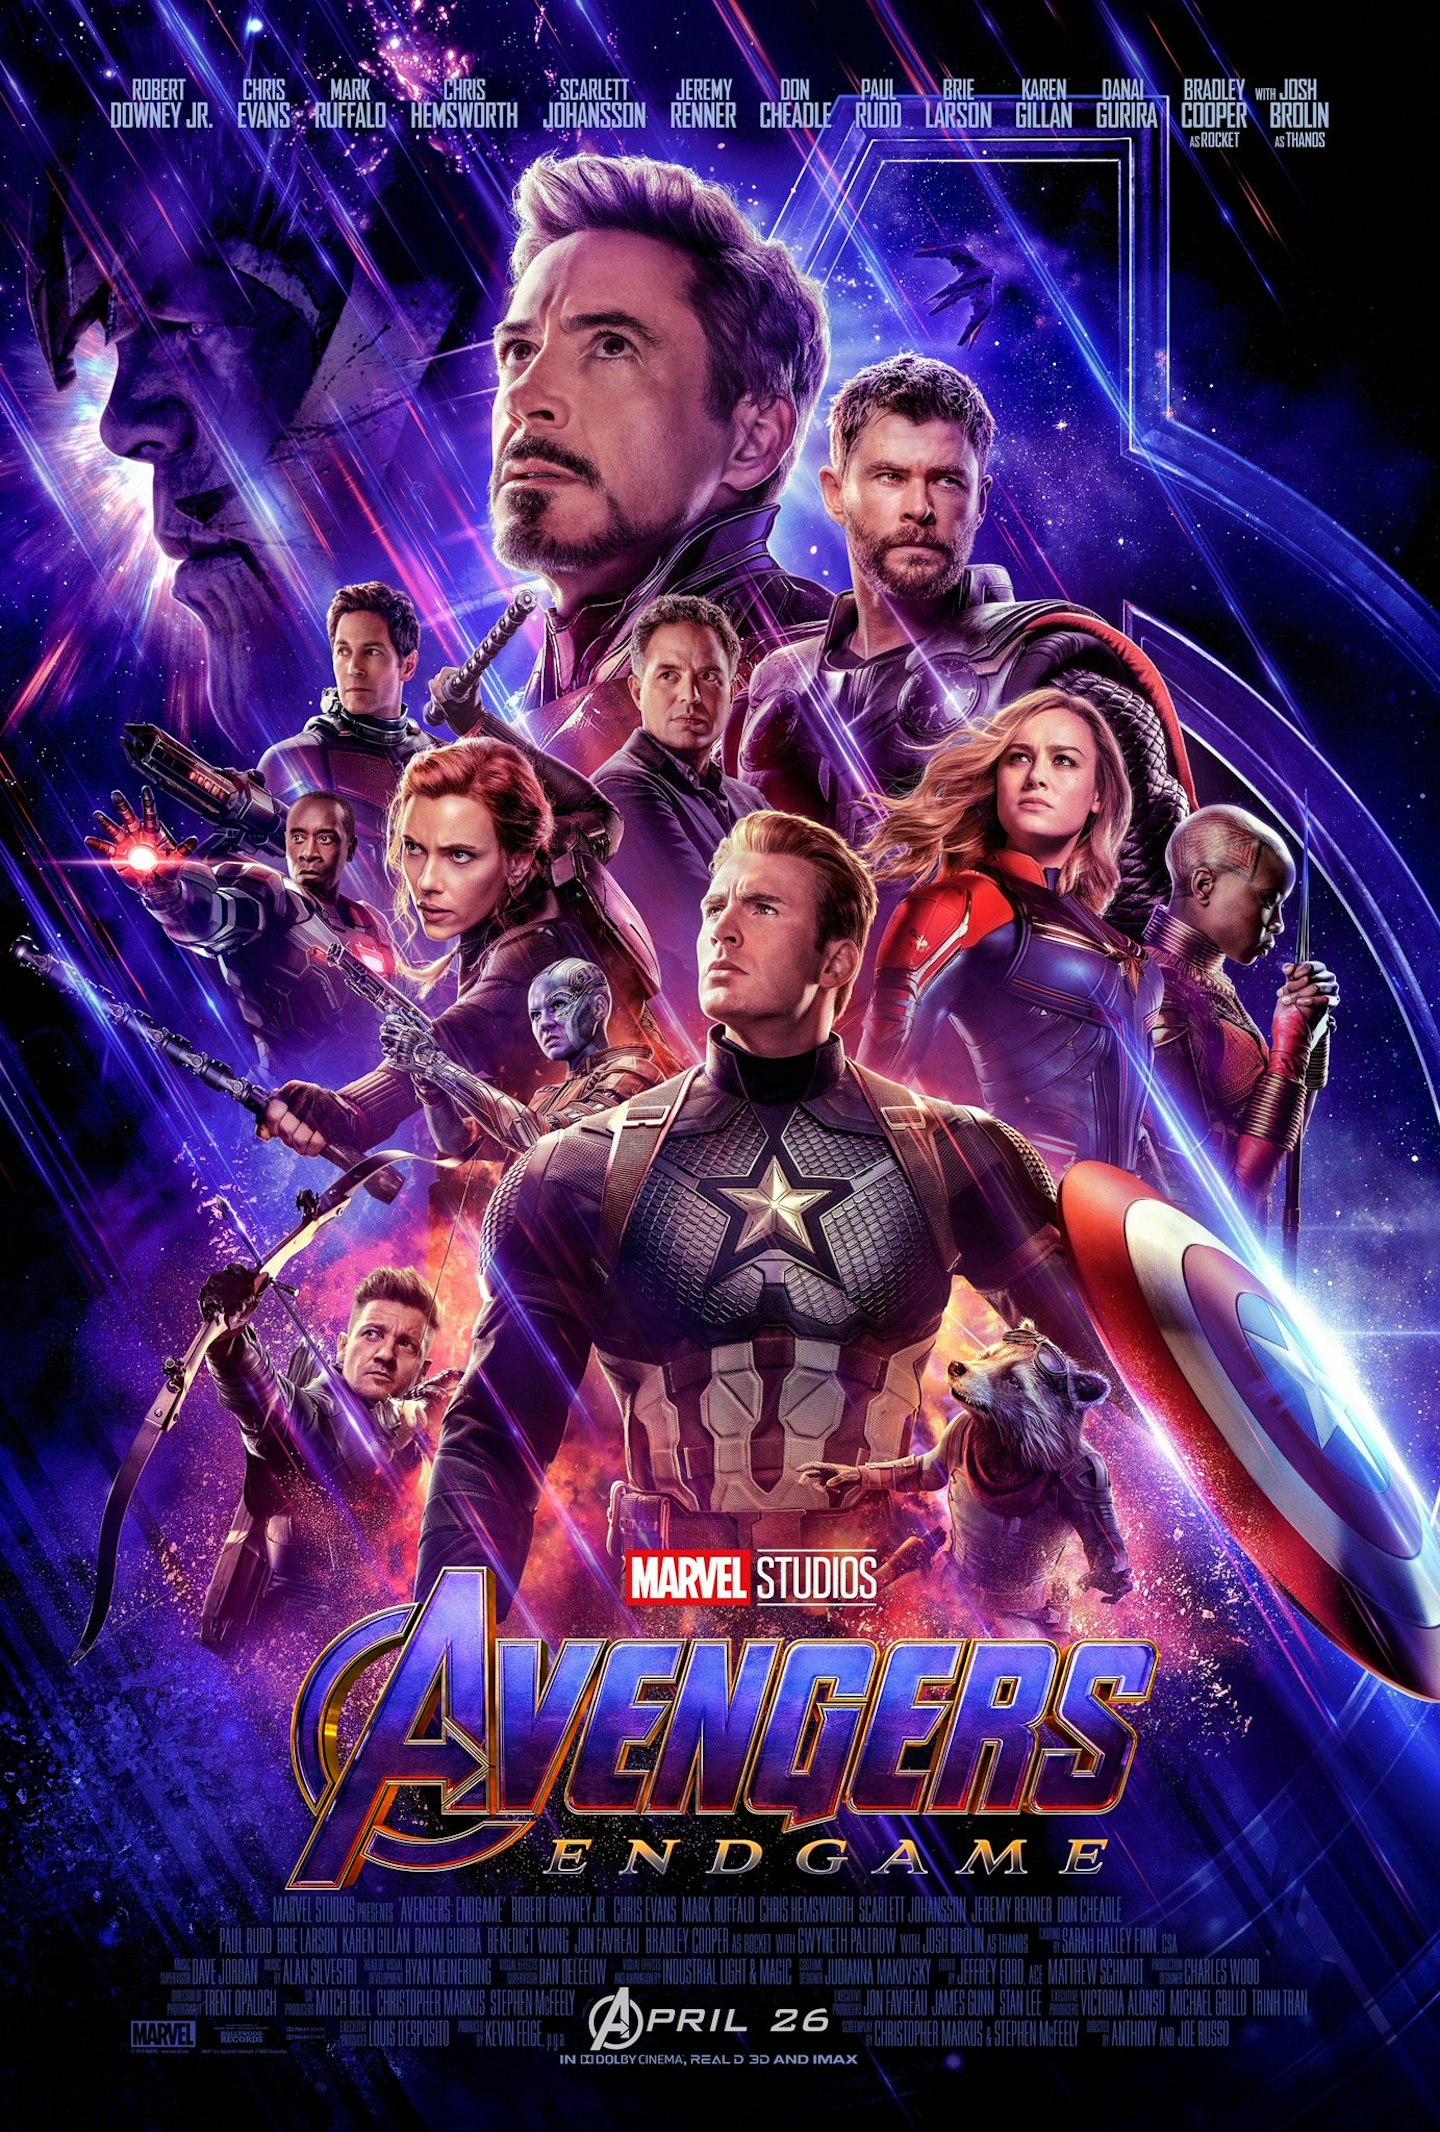 Updated Avengers: Endgame poster